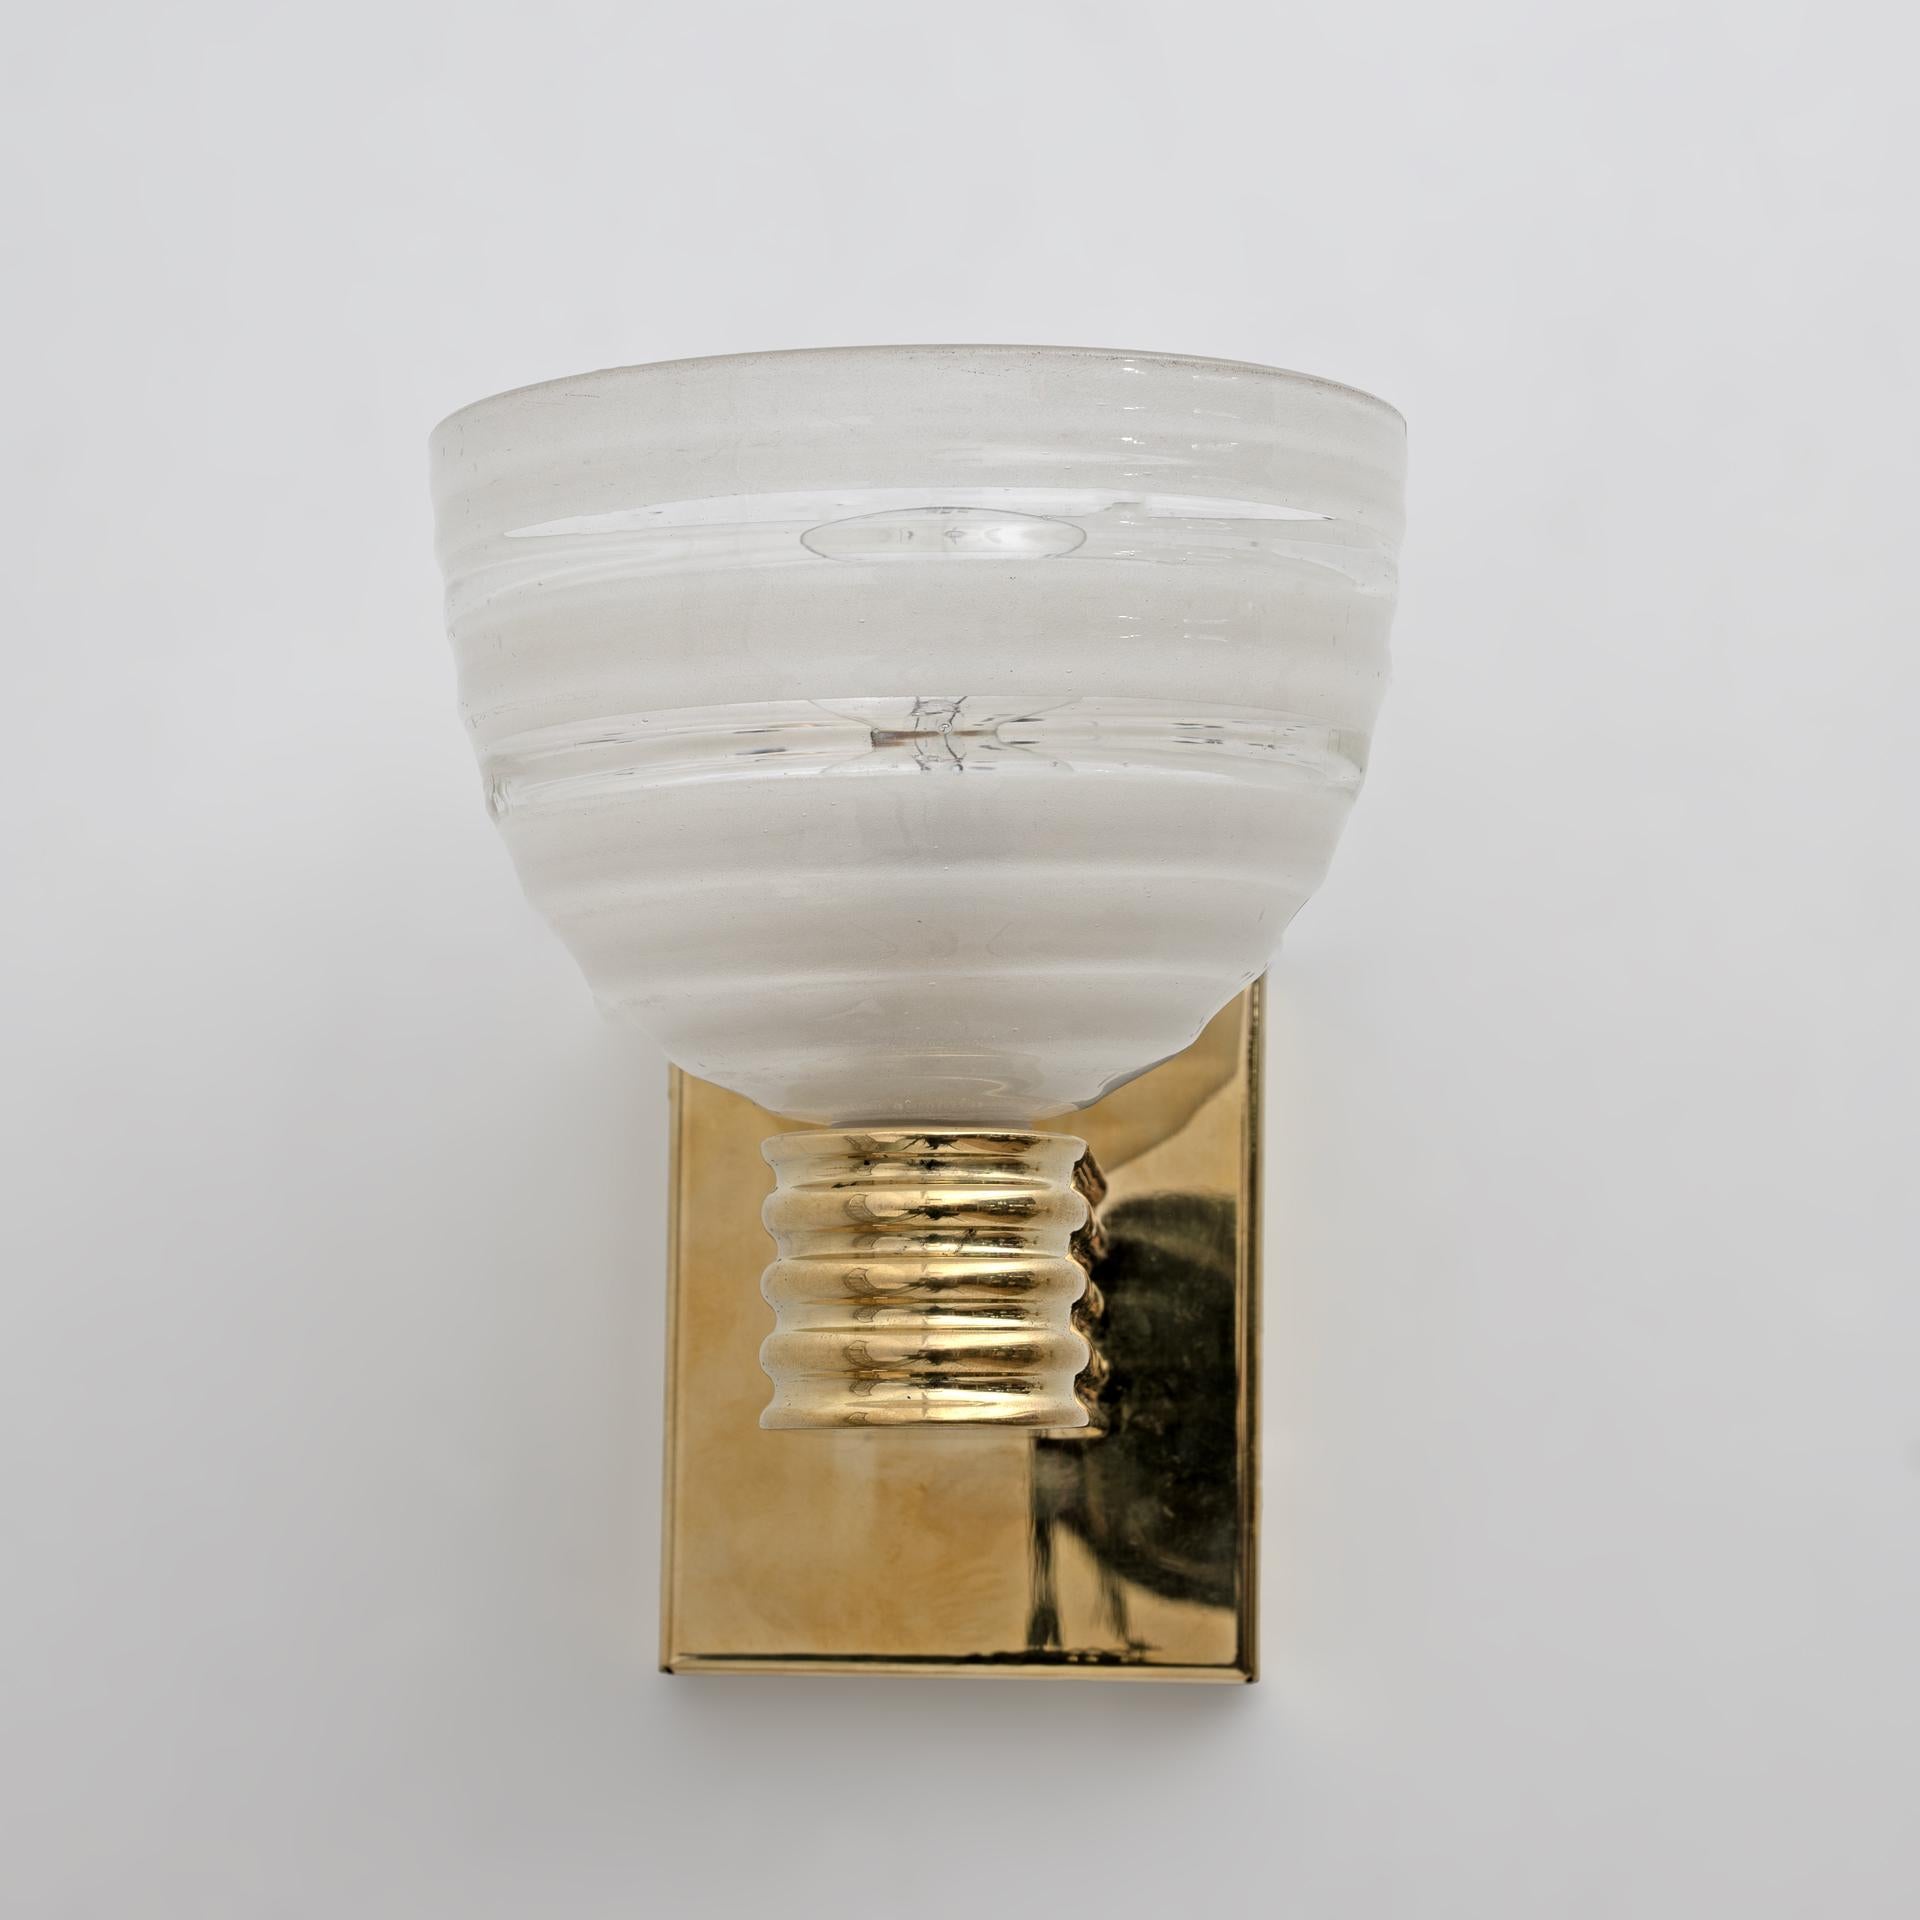 Diese schönen Murano-Glasapplikationen wurden mit der handwerklichen Technik des geblasenen Glases hergestellt und sind im Stil von Venini. Sie stehen auf einem eleganten, strukturierten Messingständer. Sie sind äußerst dekorativ und können in jeder